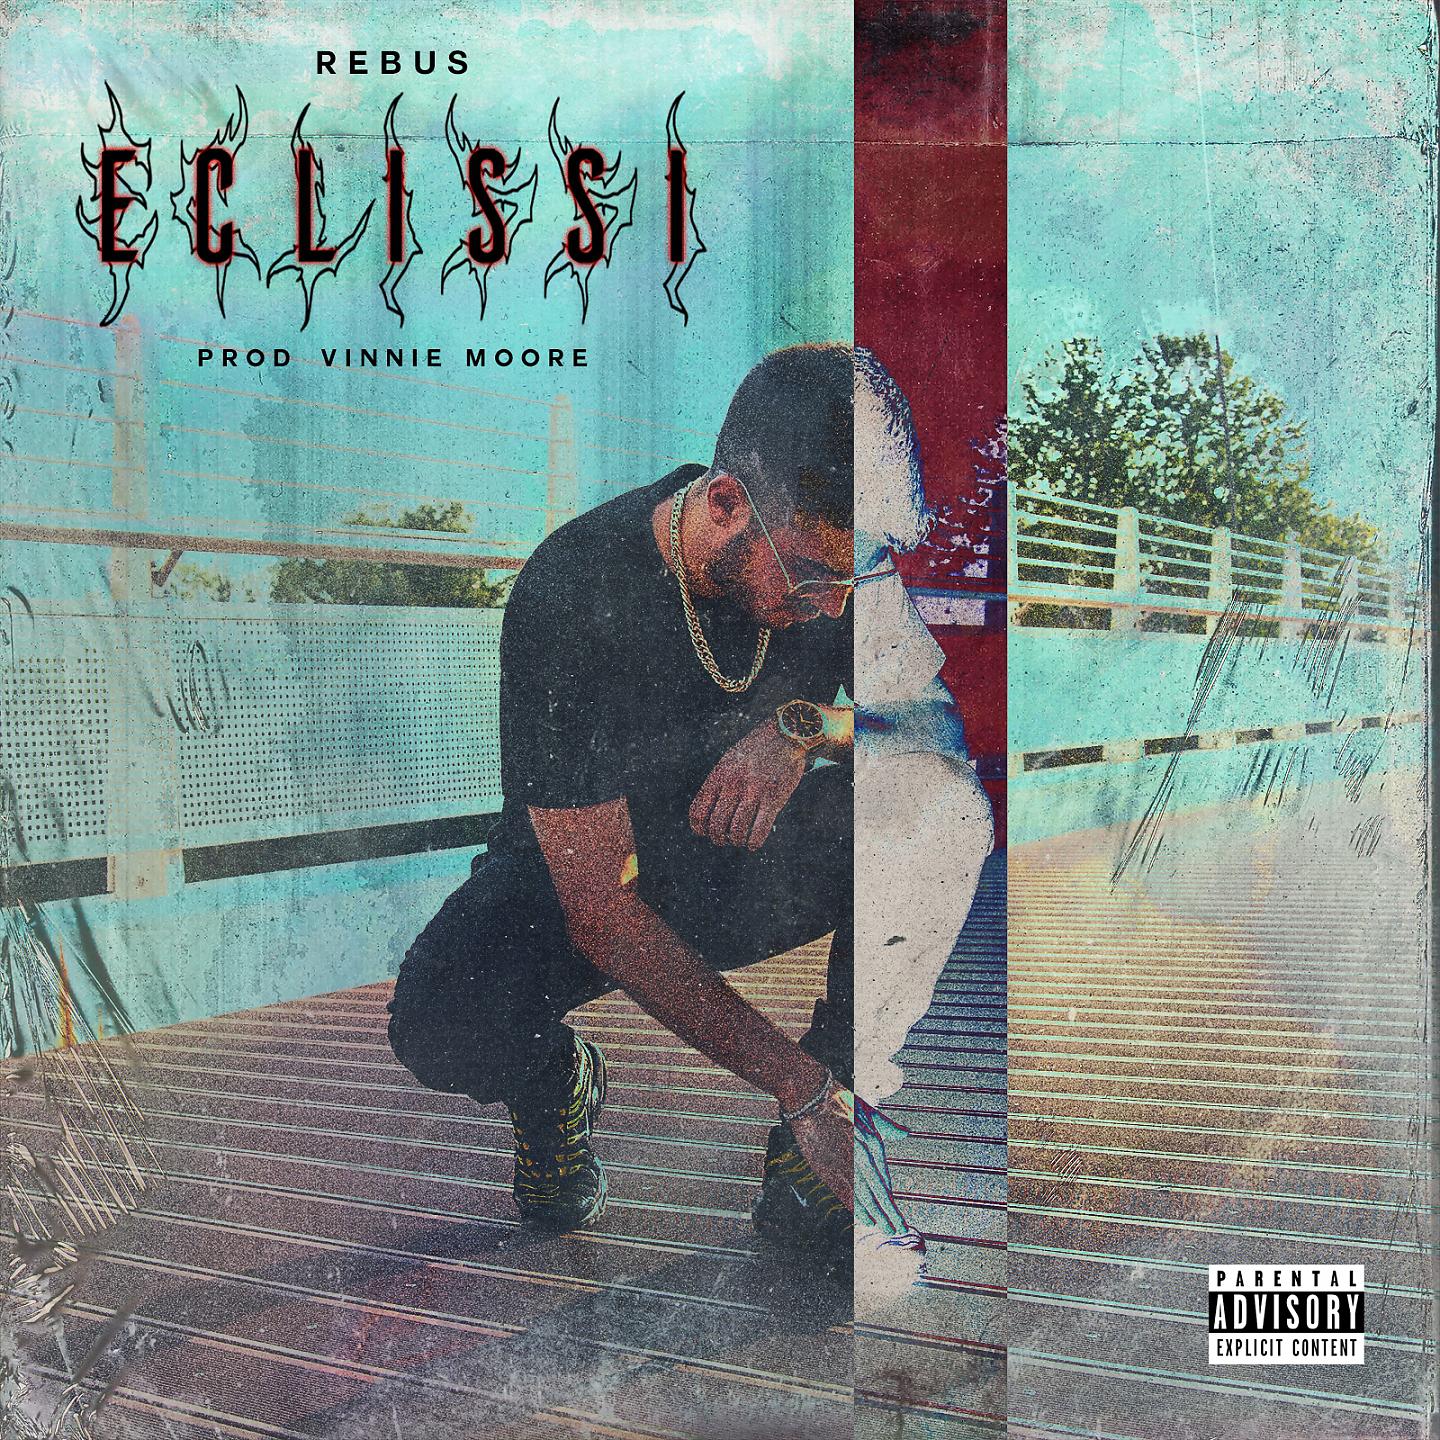 Постер альбома Eclissi